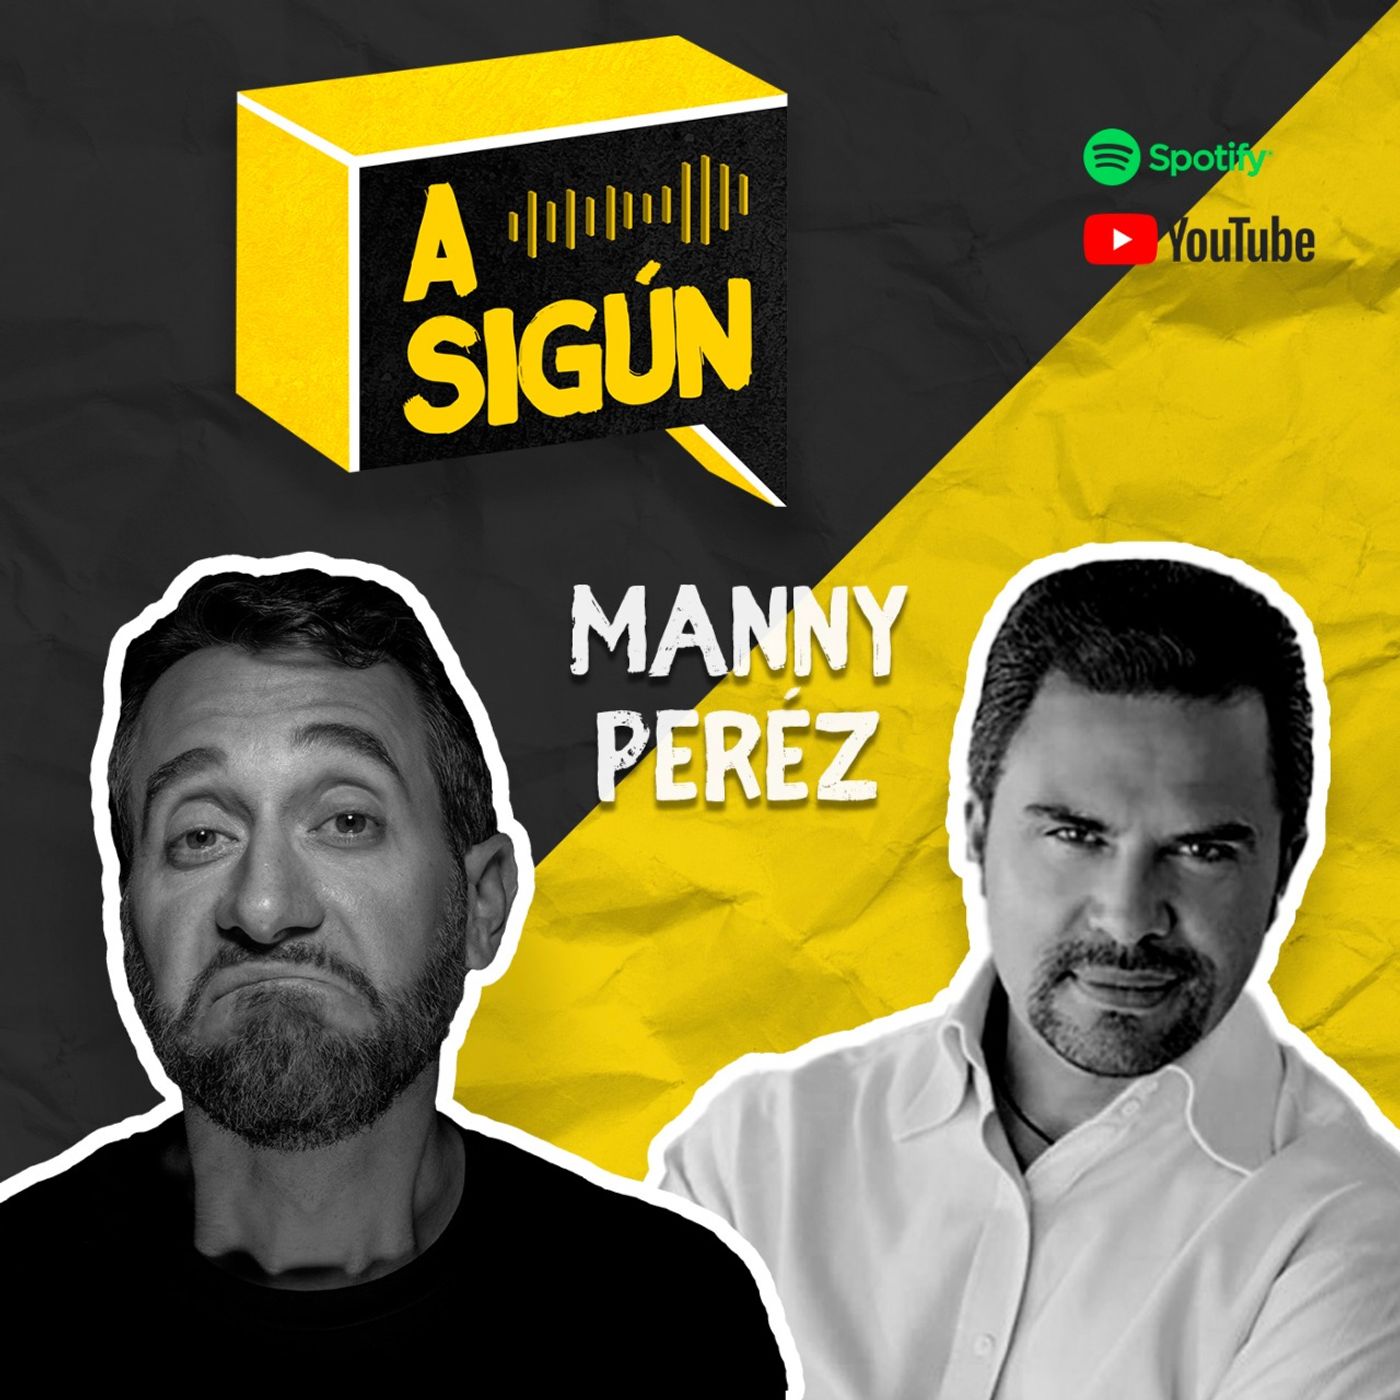 033. A SIGÚN: Manny Pérez